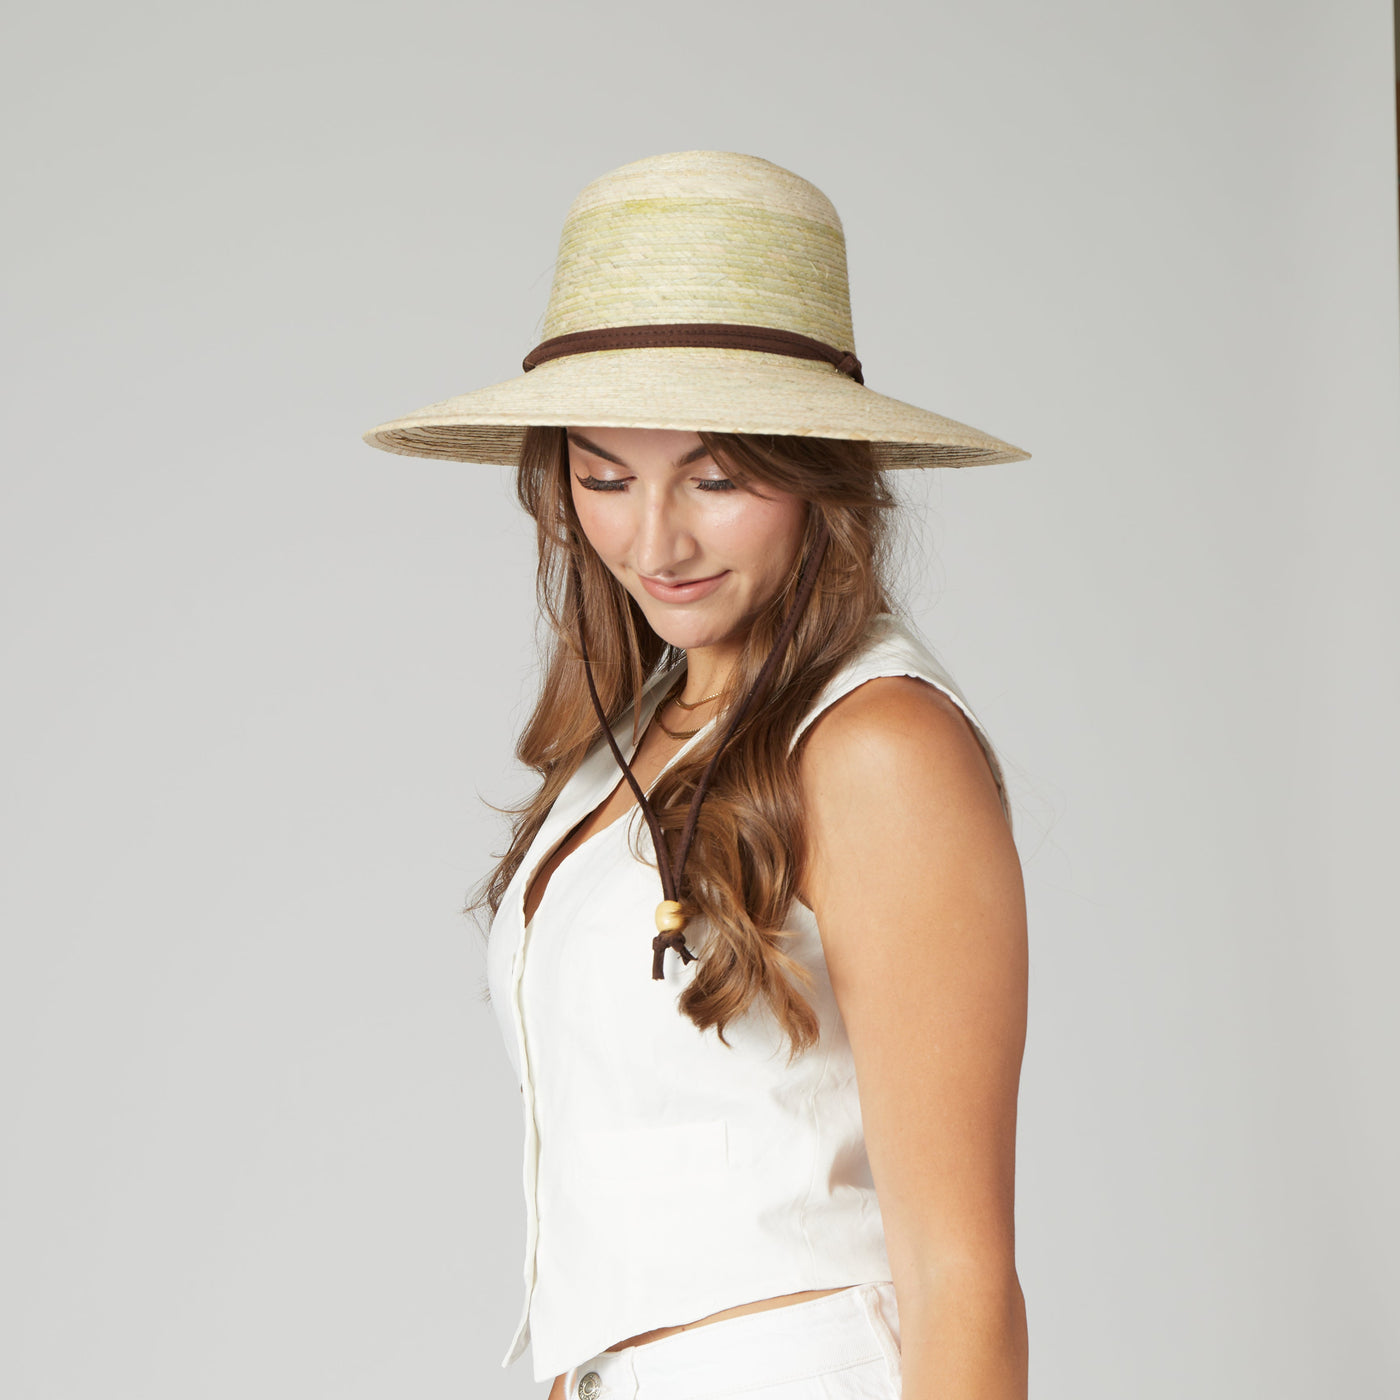 SUN BRIM - Women's Palm Braid Garden Hat